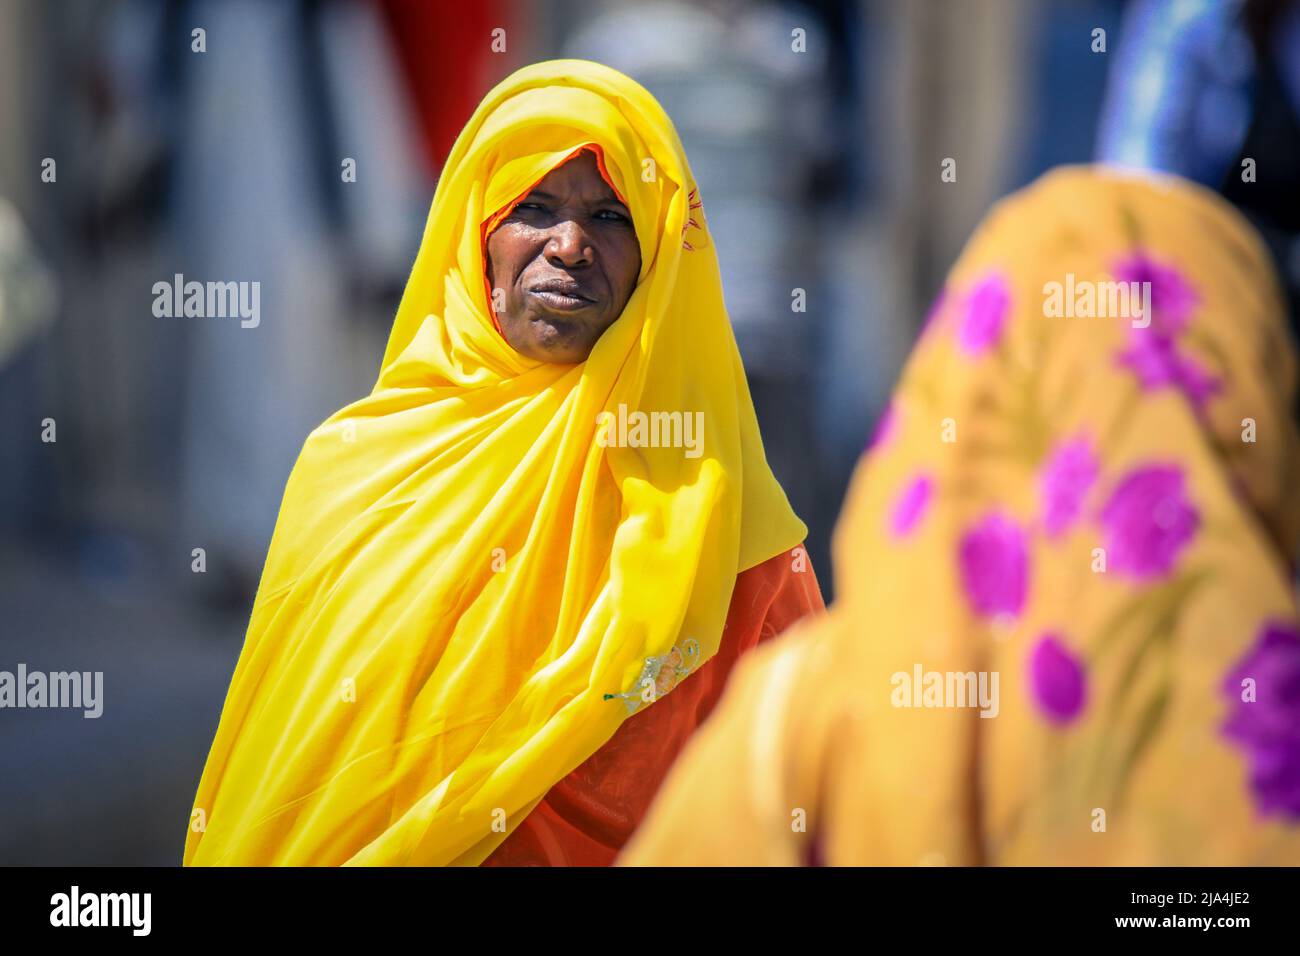 Femme en robe traditionnelle sur la rue Keren Banque D'Images